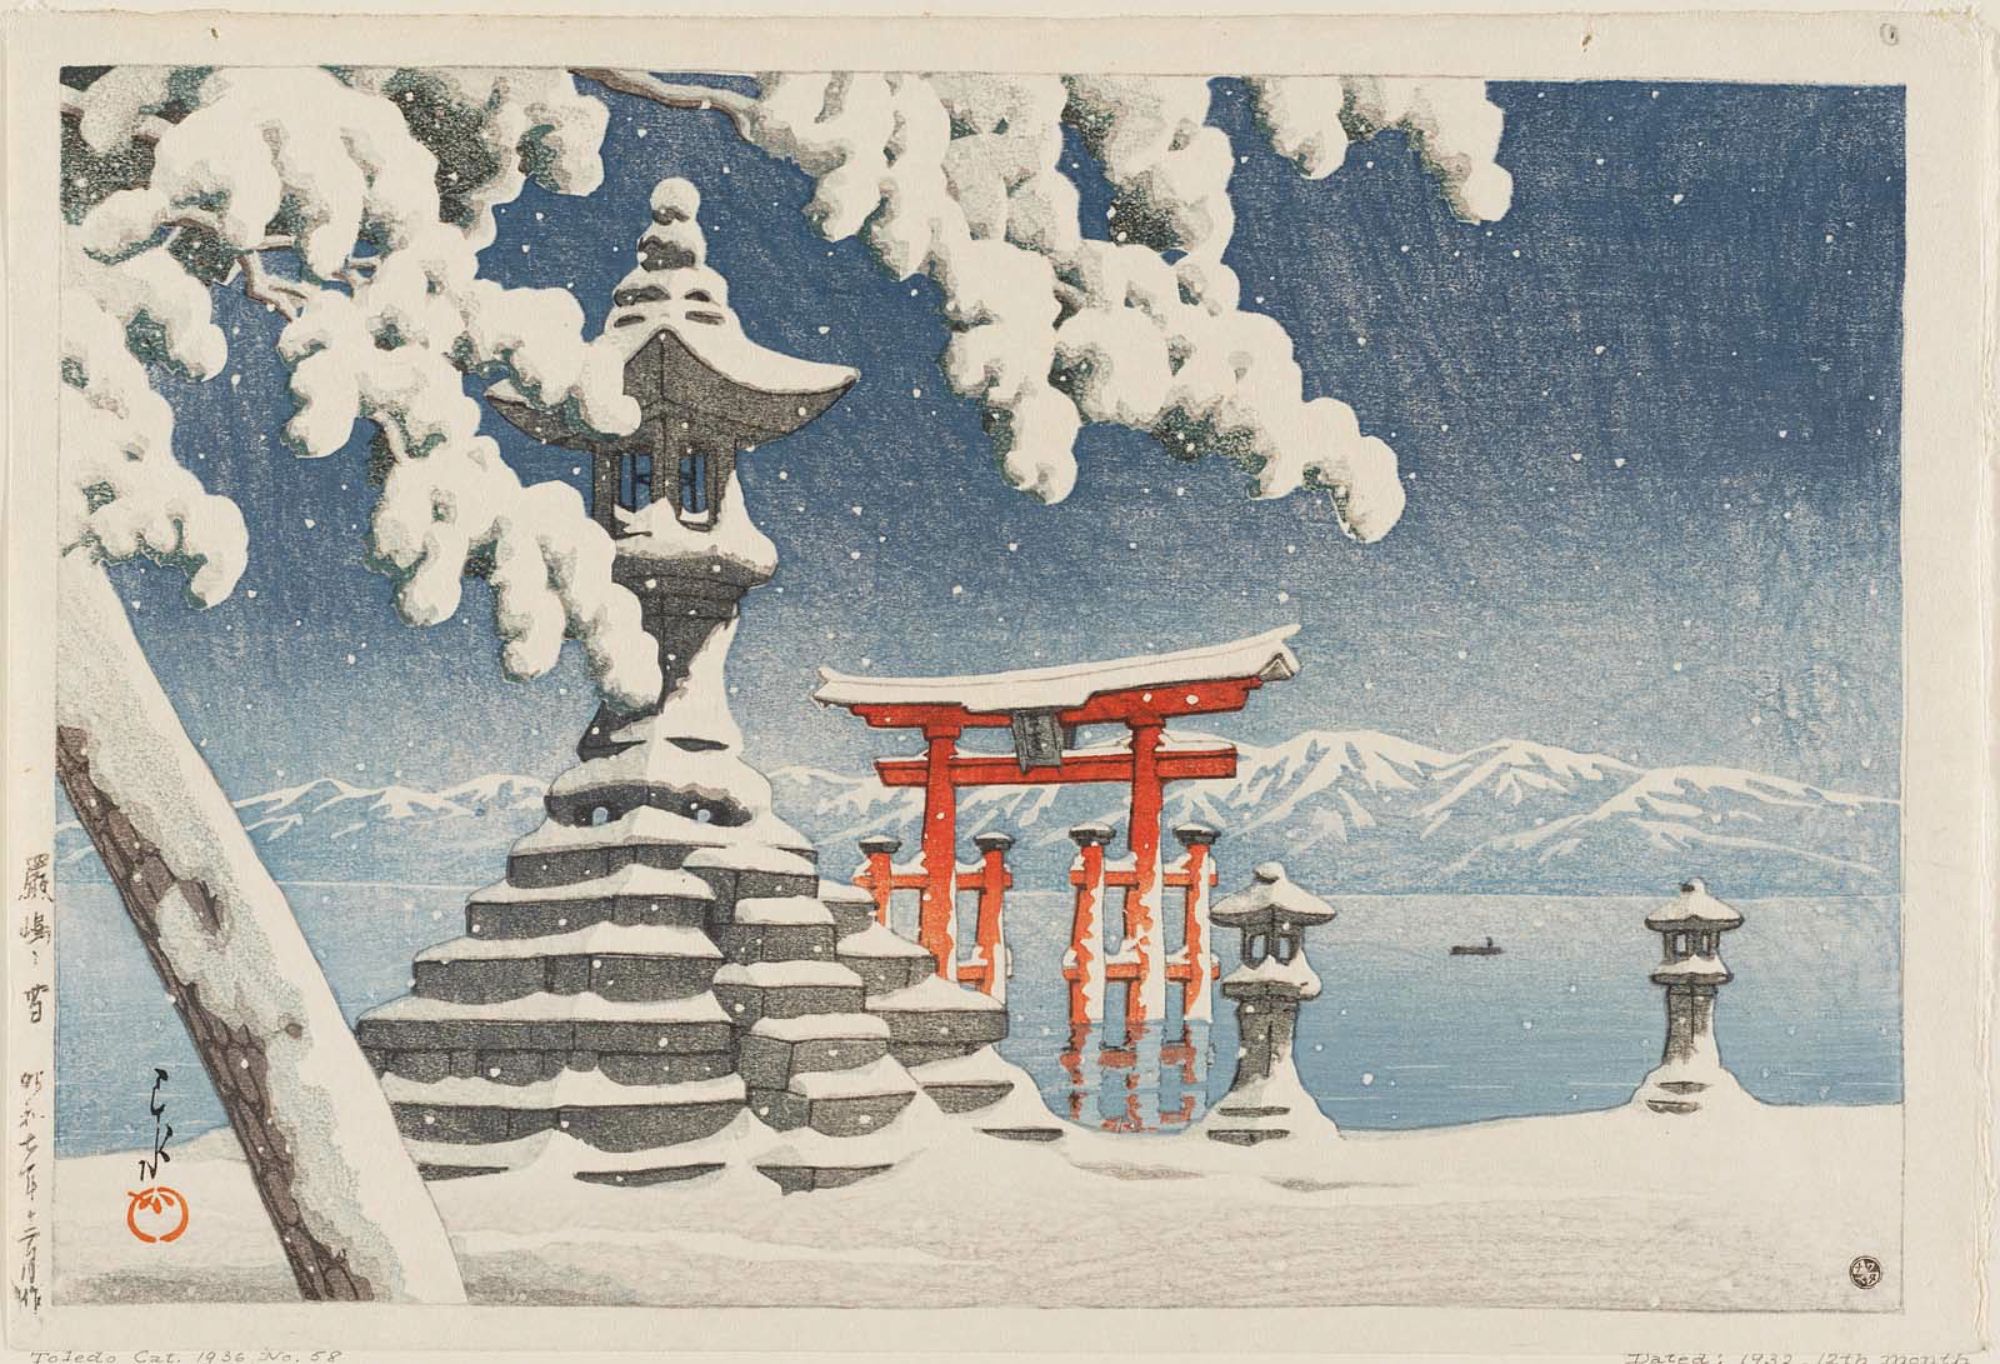 이쓰쿠시마의 눈 (Snow at Itsukushima) by Hasui Kawase - 1932년 - 26.5 × 39.5 cm 